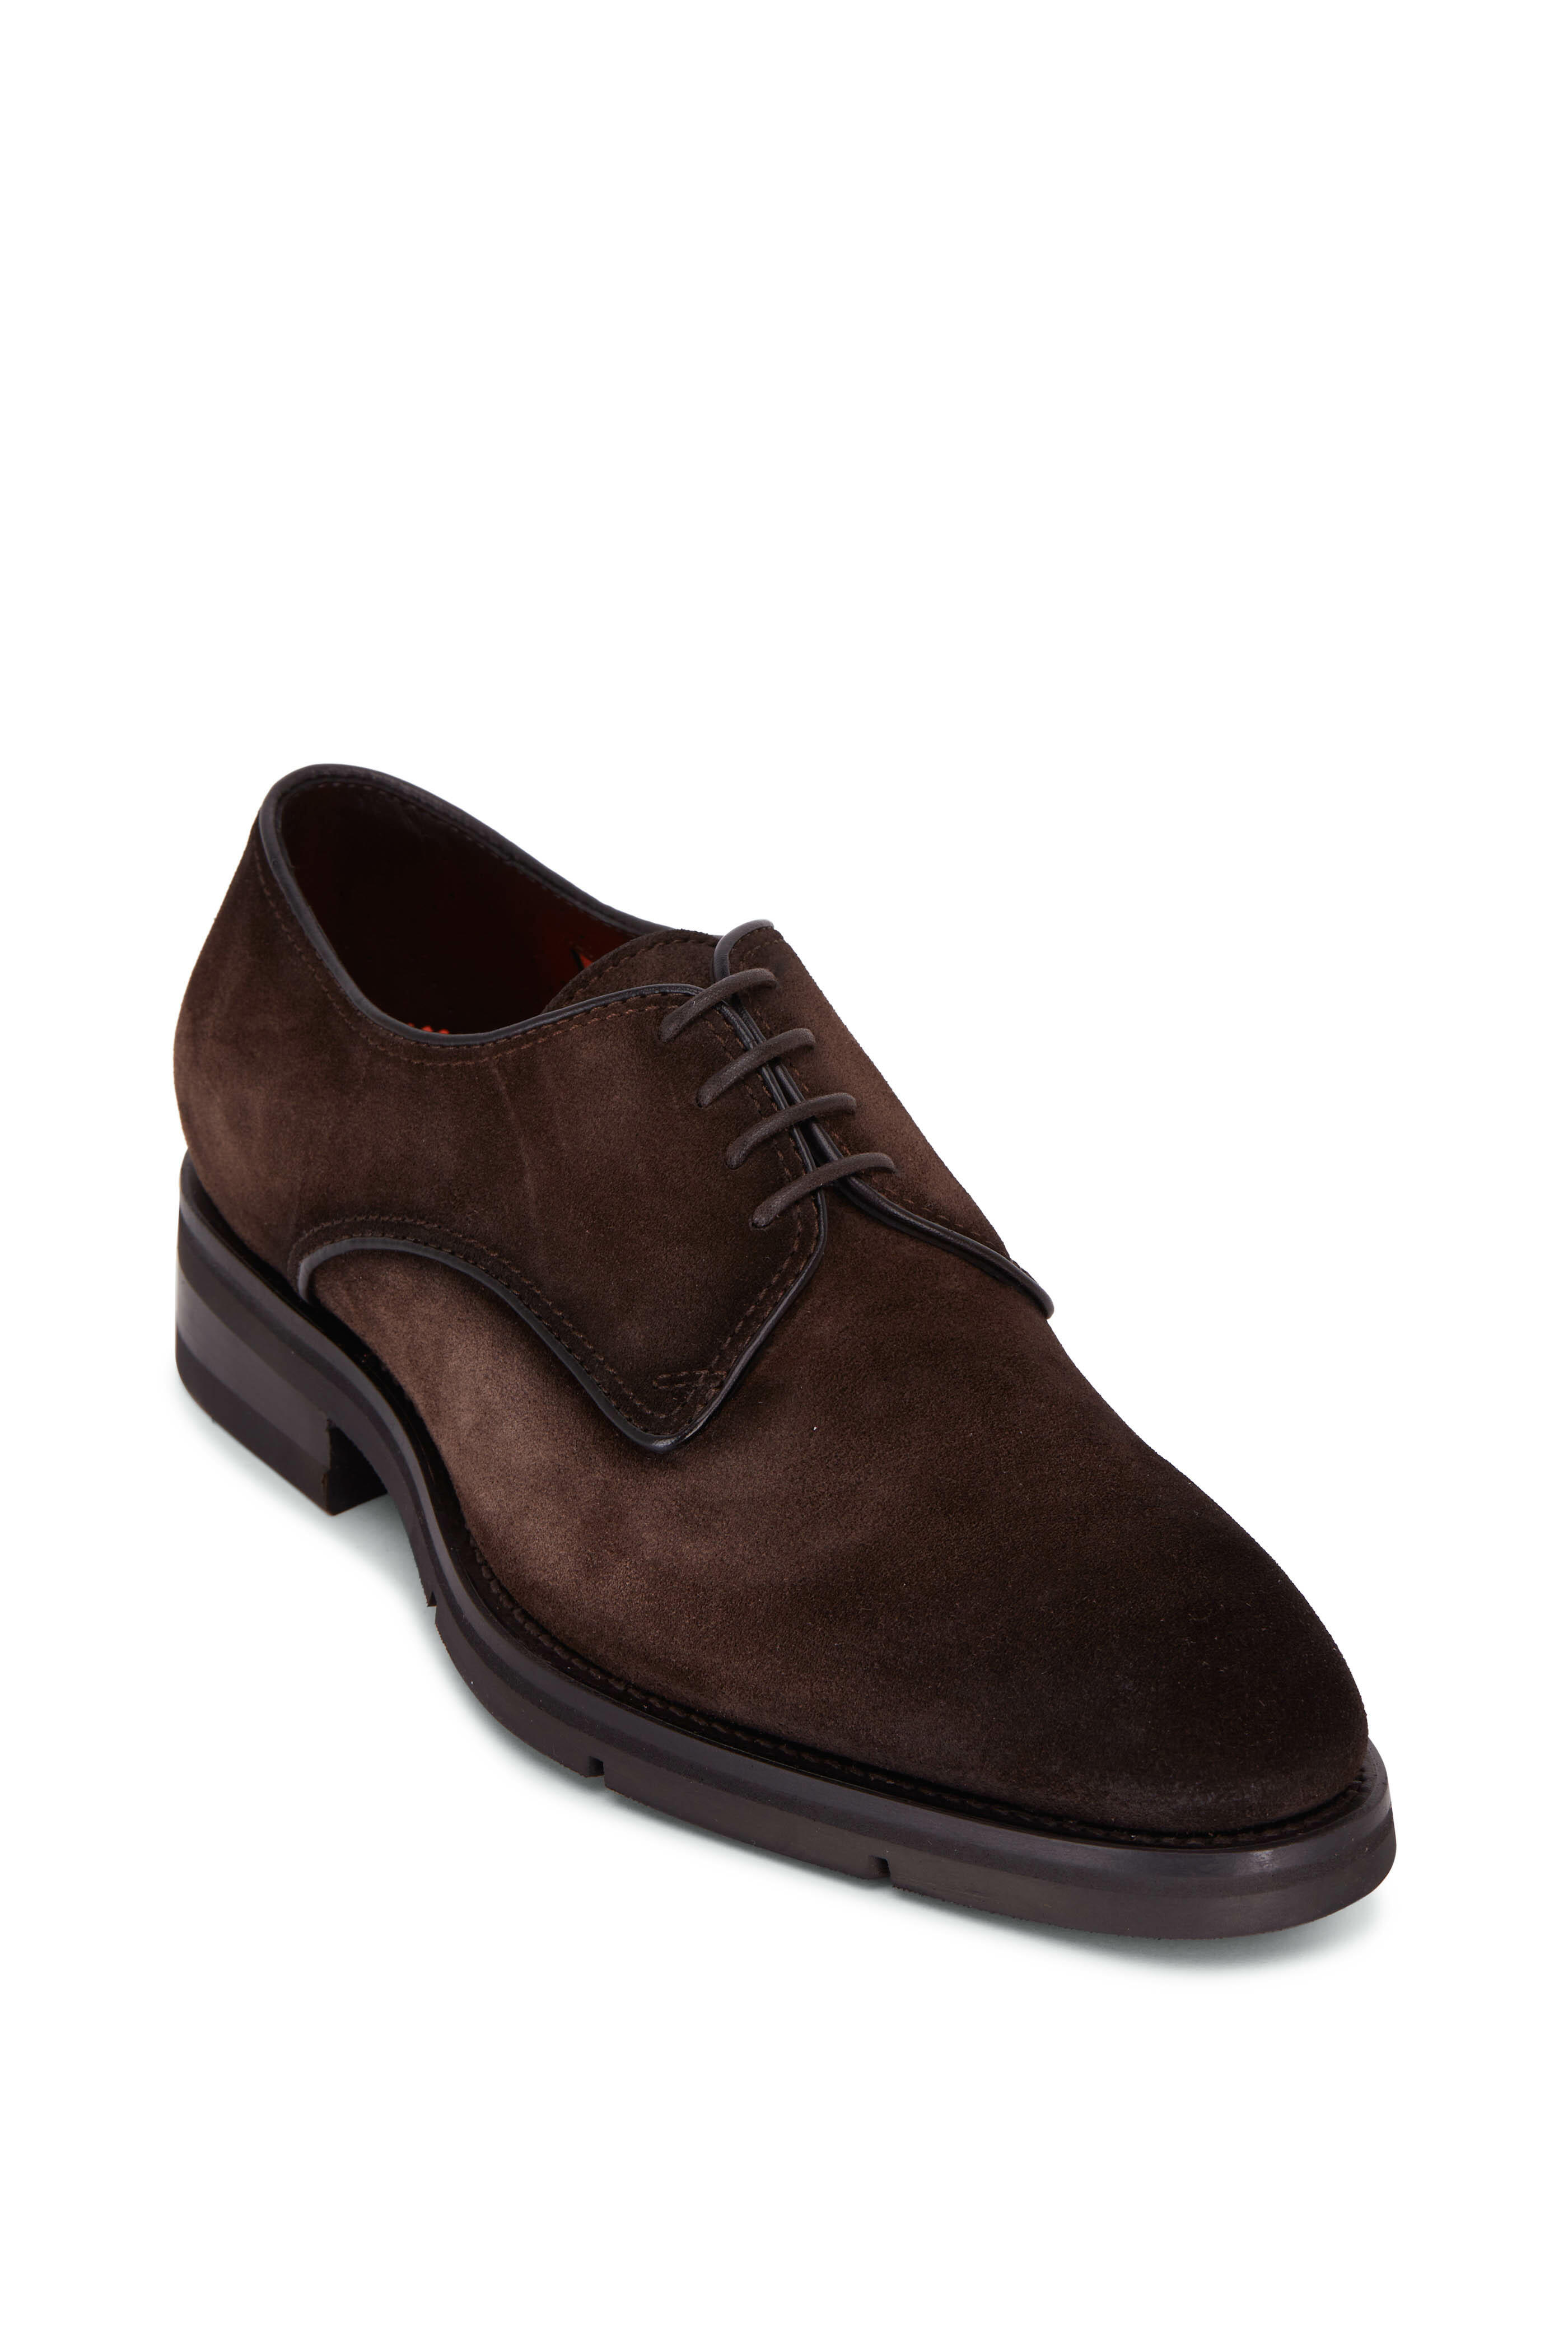 santoni - erion dark brown suede dress shoe | mitchell stores